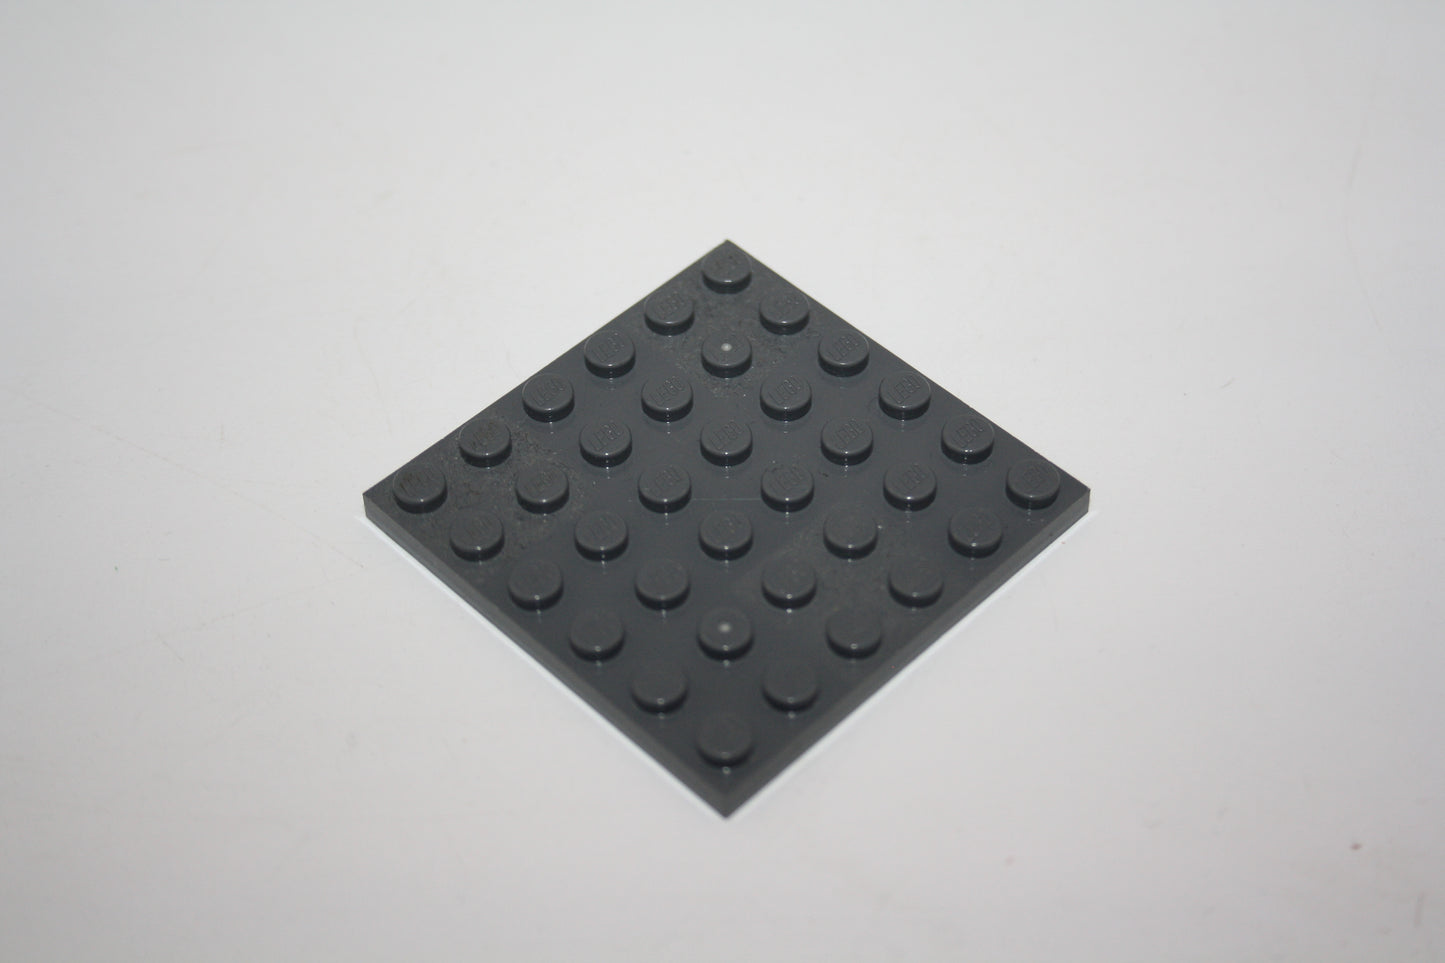 LEGO® - 6x6 Platte - 3958 - versch. Farben - Platten - Base Plate